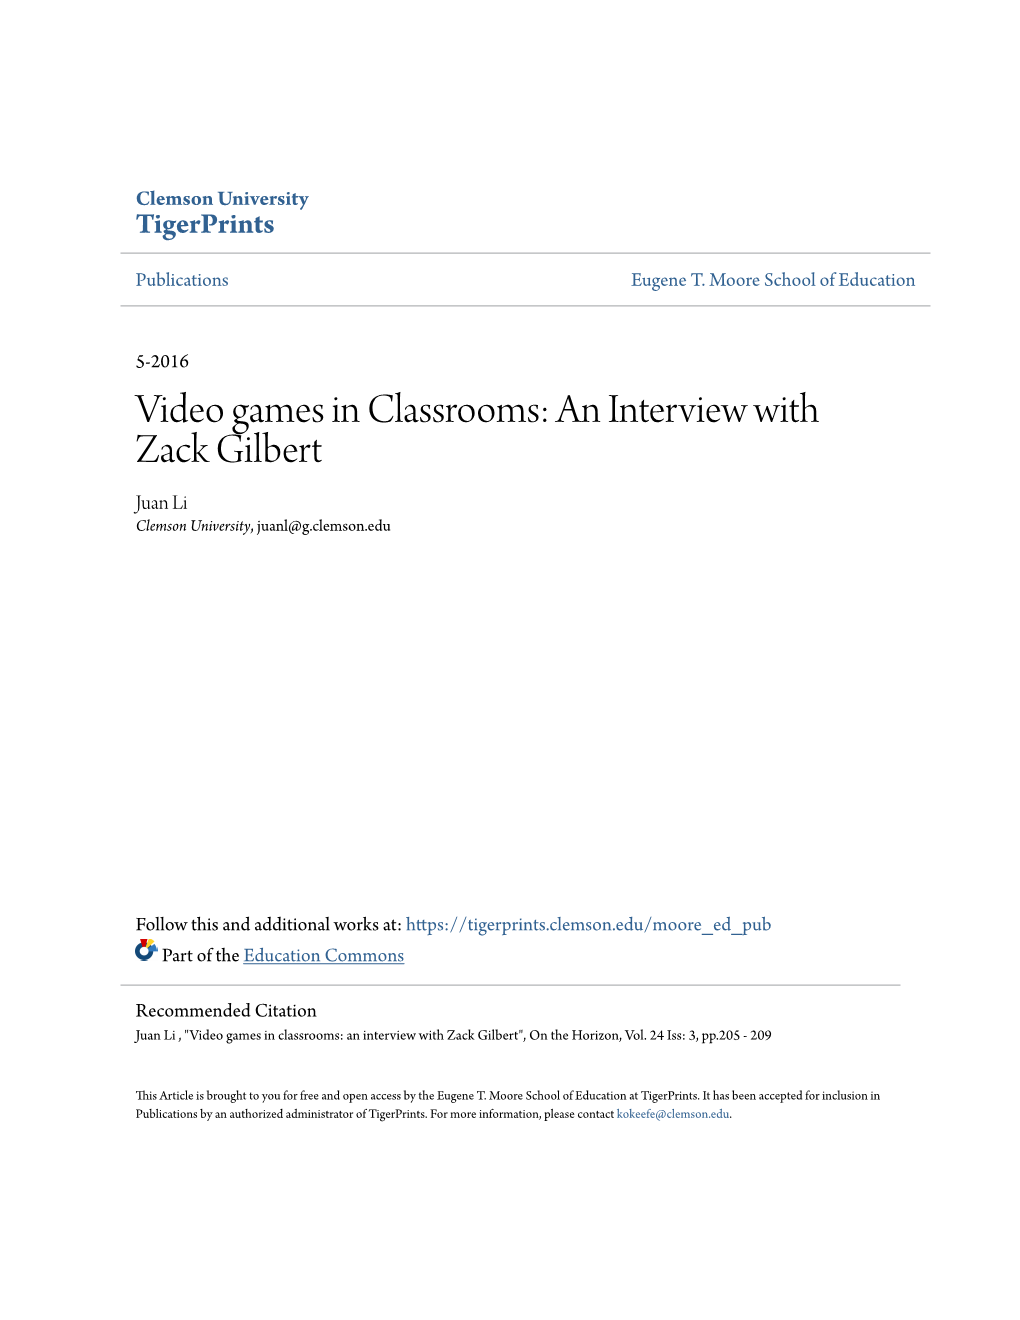 Video Games in Classrooms: an Interview with Zack Gilbert Juan Li Clemson University, Juanl@G.Clemson.Edu